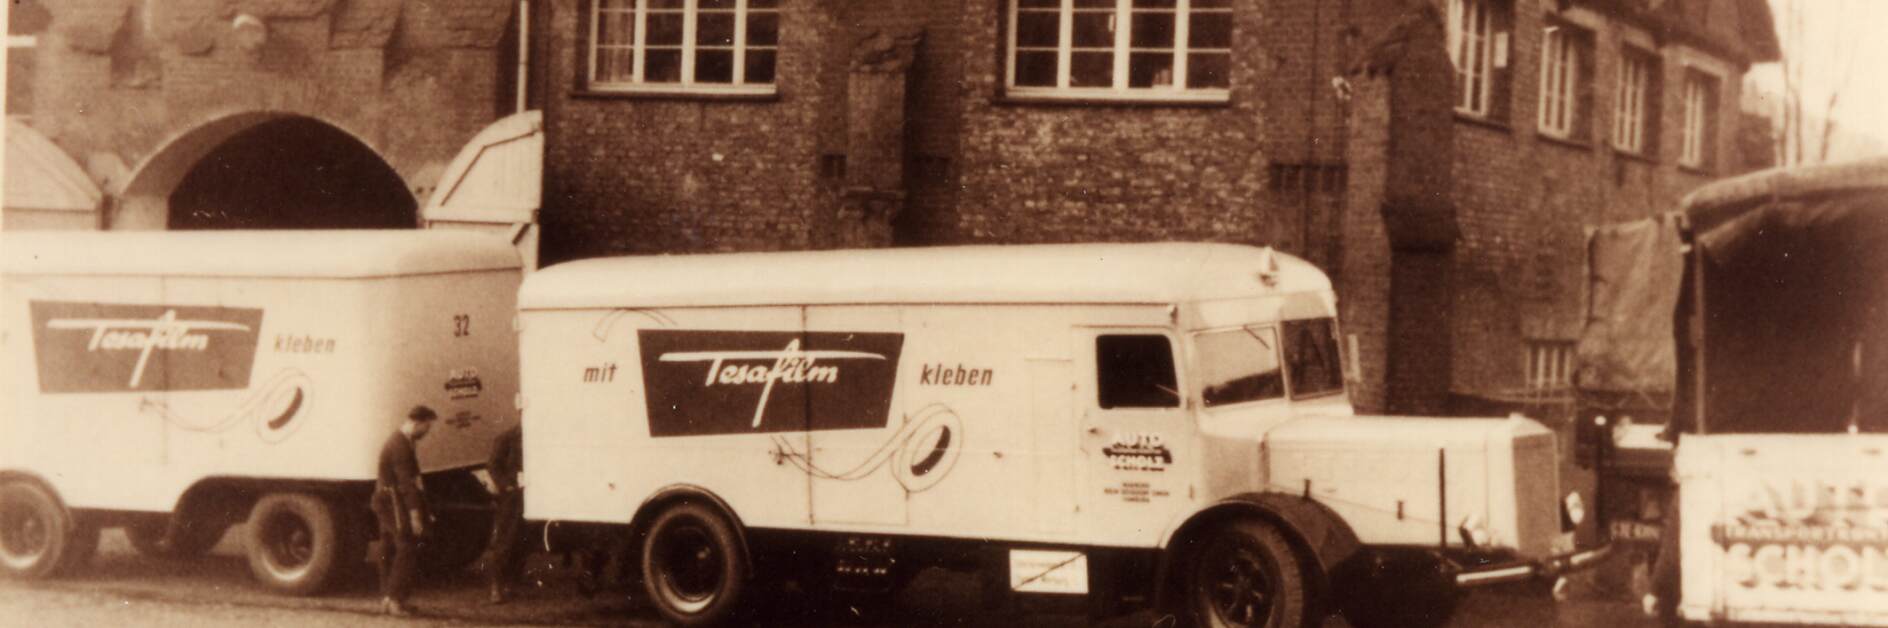 tesa-lastbil med annonce for tesafilm fra 1952